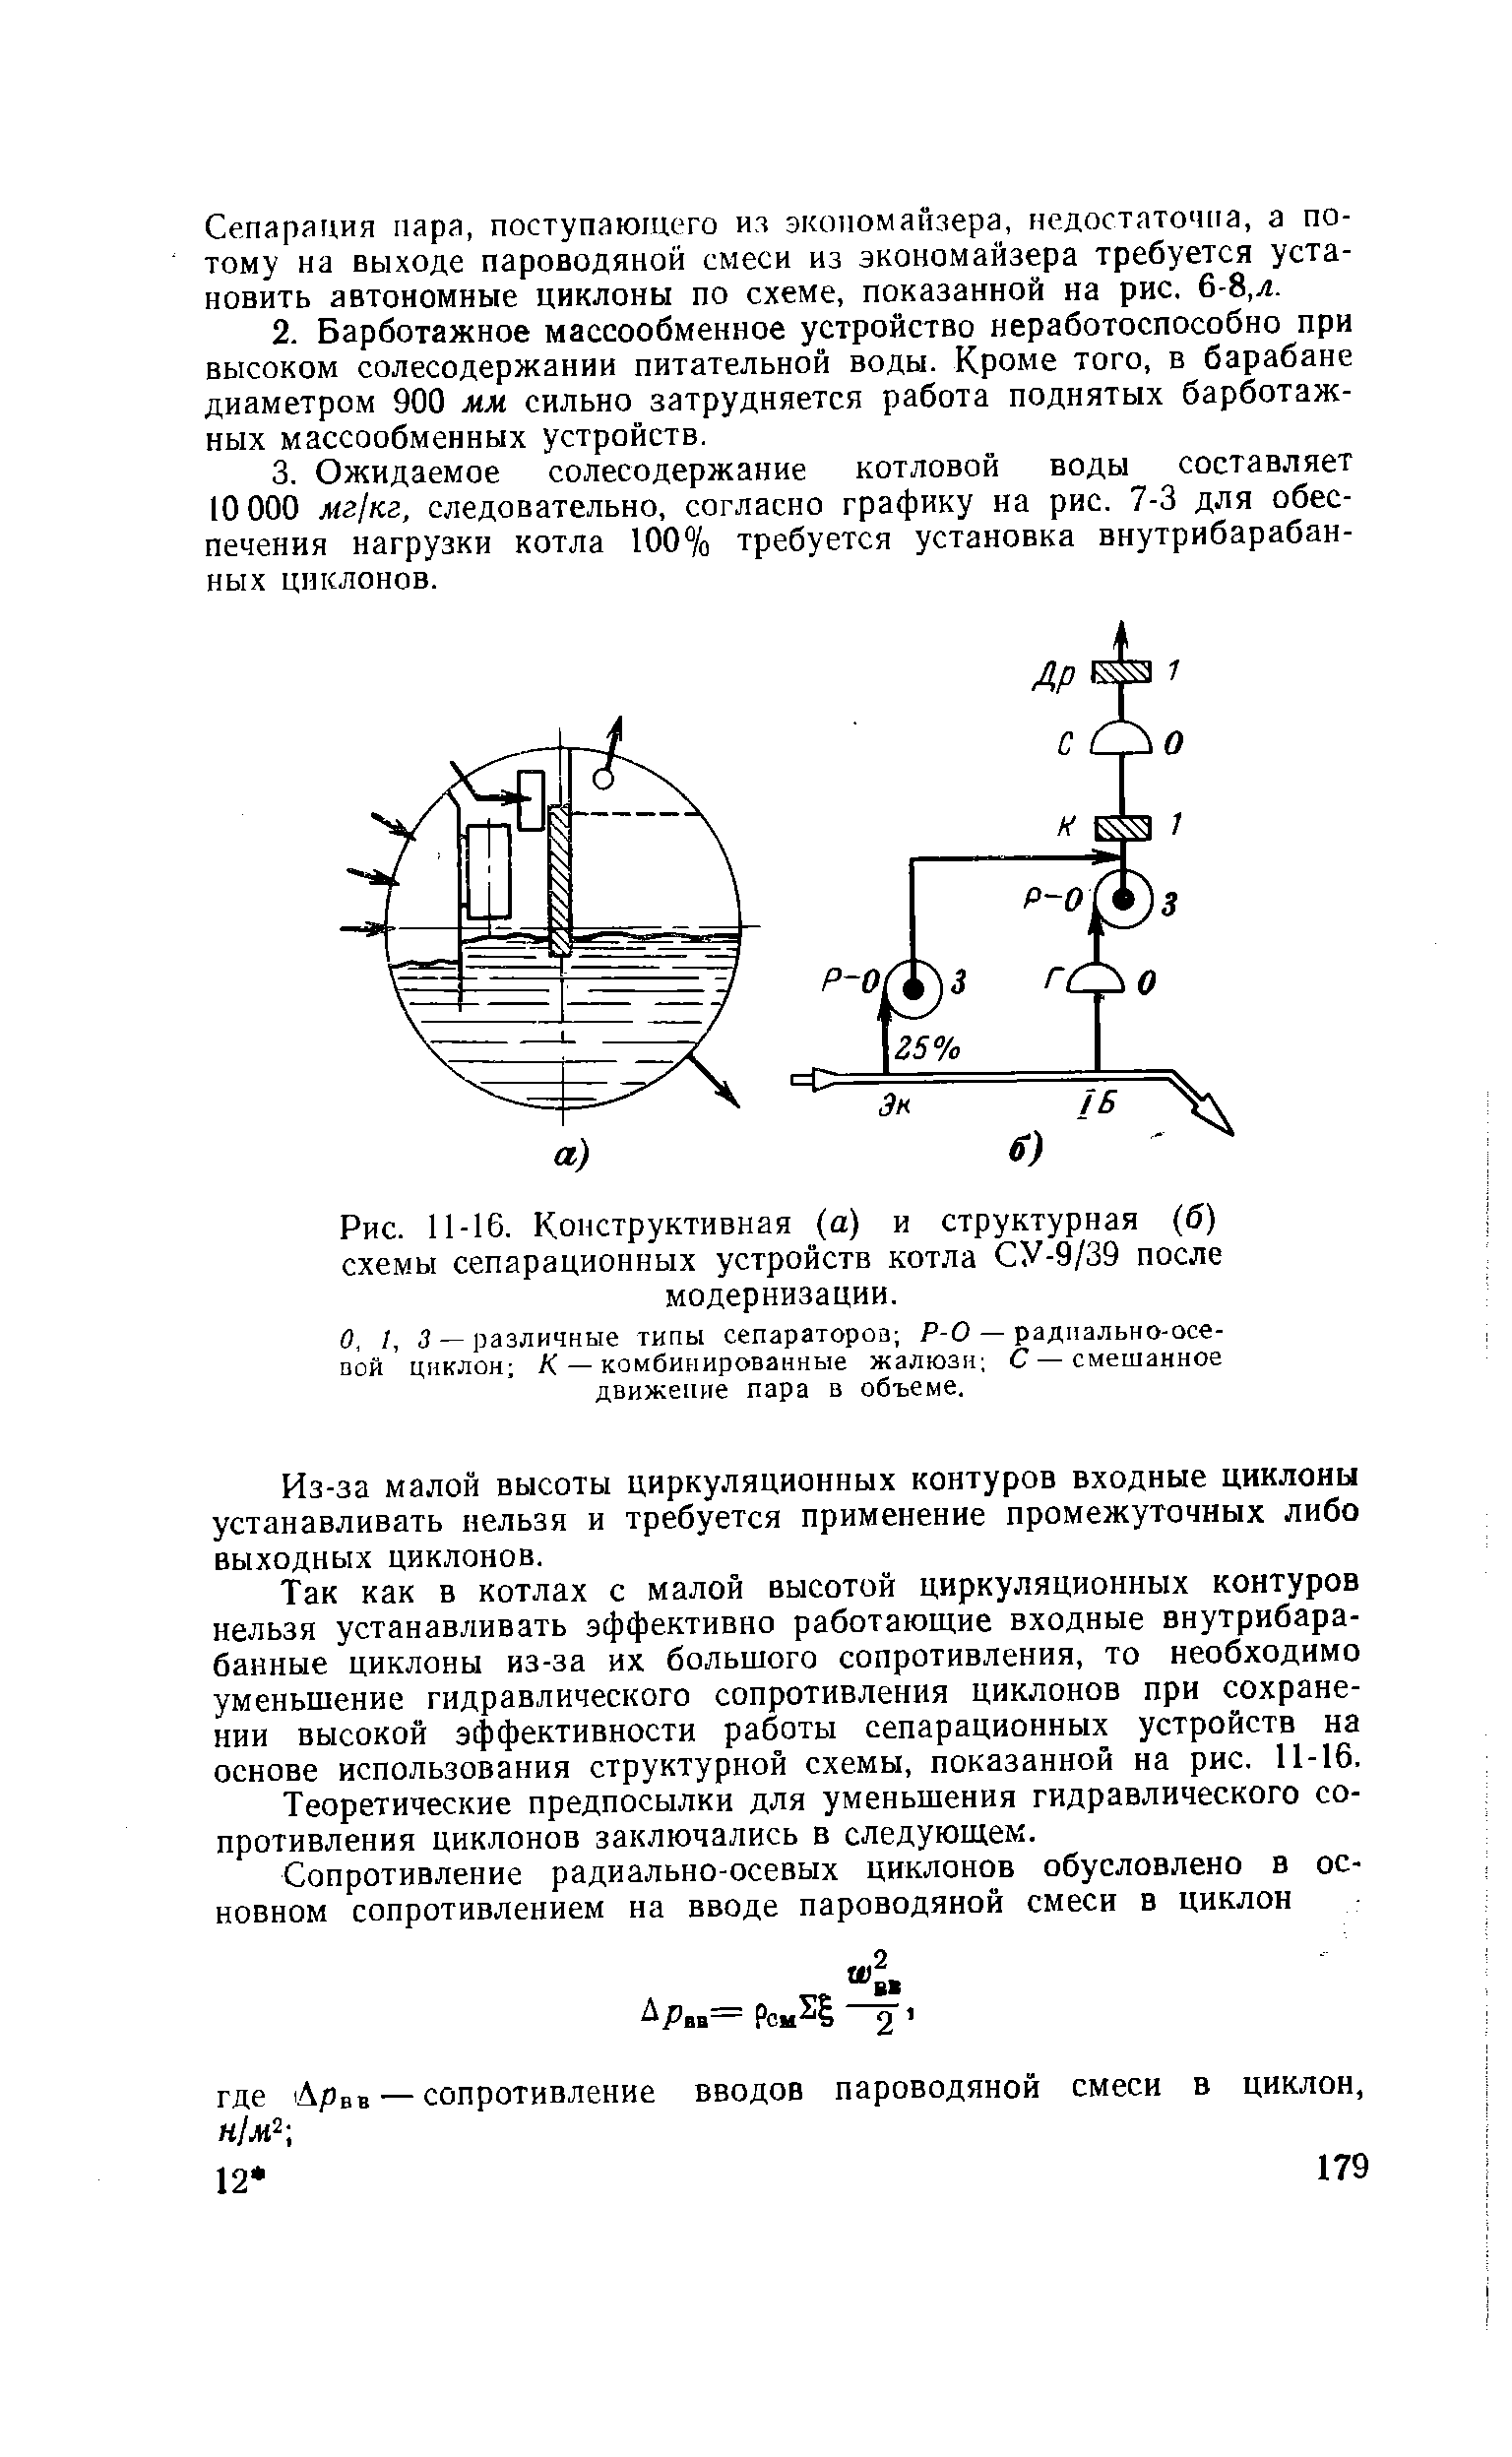 Рис. 11-16. Конструктивная (а) и структурная (б) схемы сепарационных устройств котла СУ-9/39 после модернизации.
